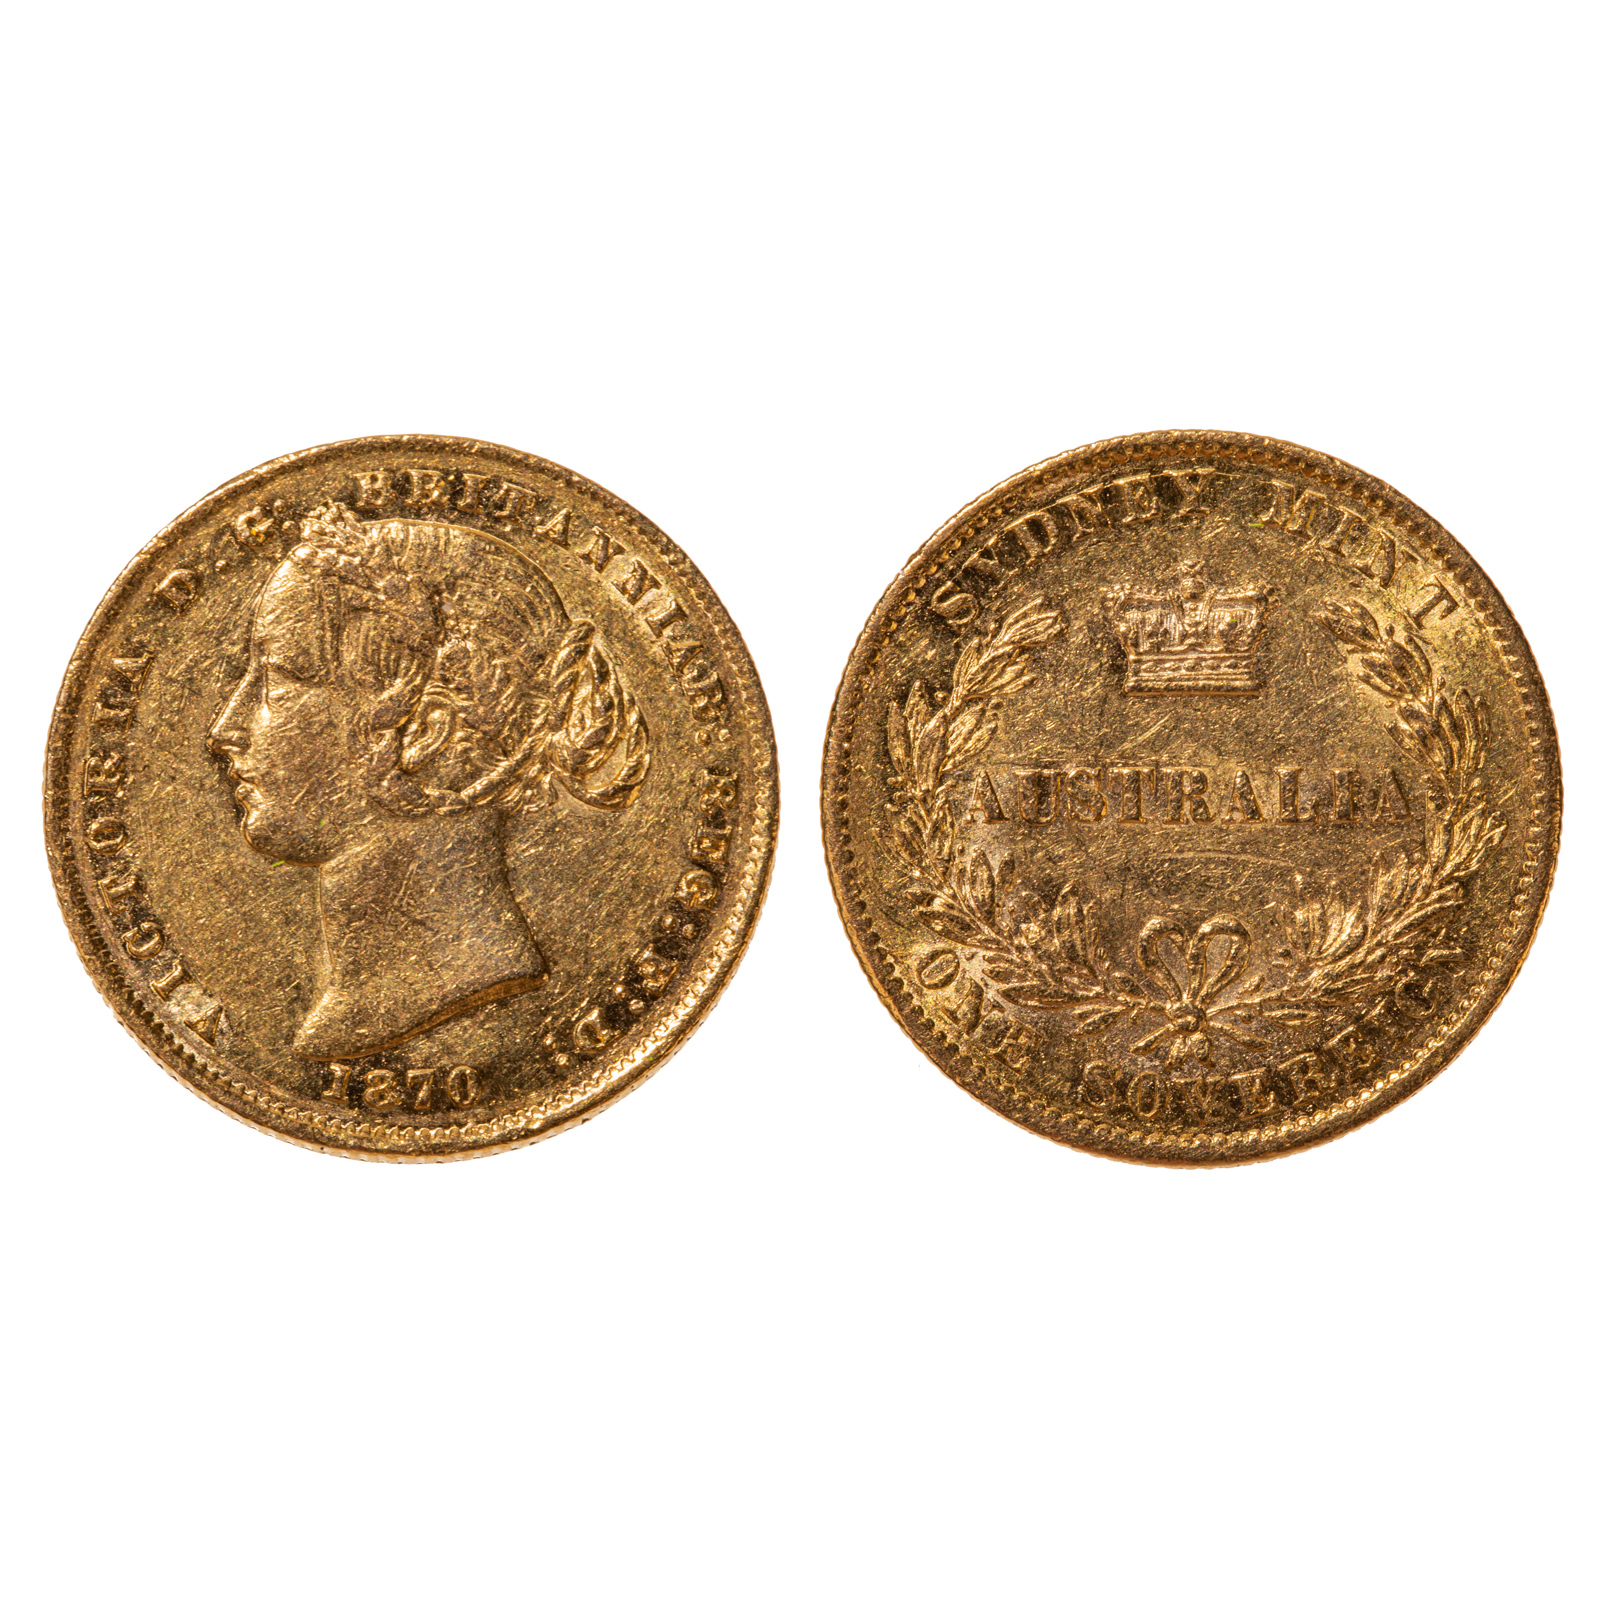 1870 AUSTRALIA GOLD SOVEREIGN AU 287d6e